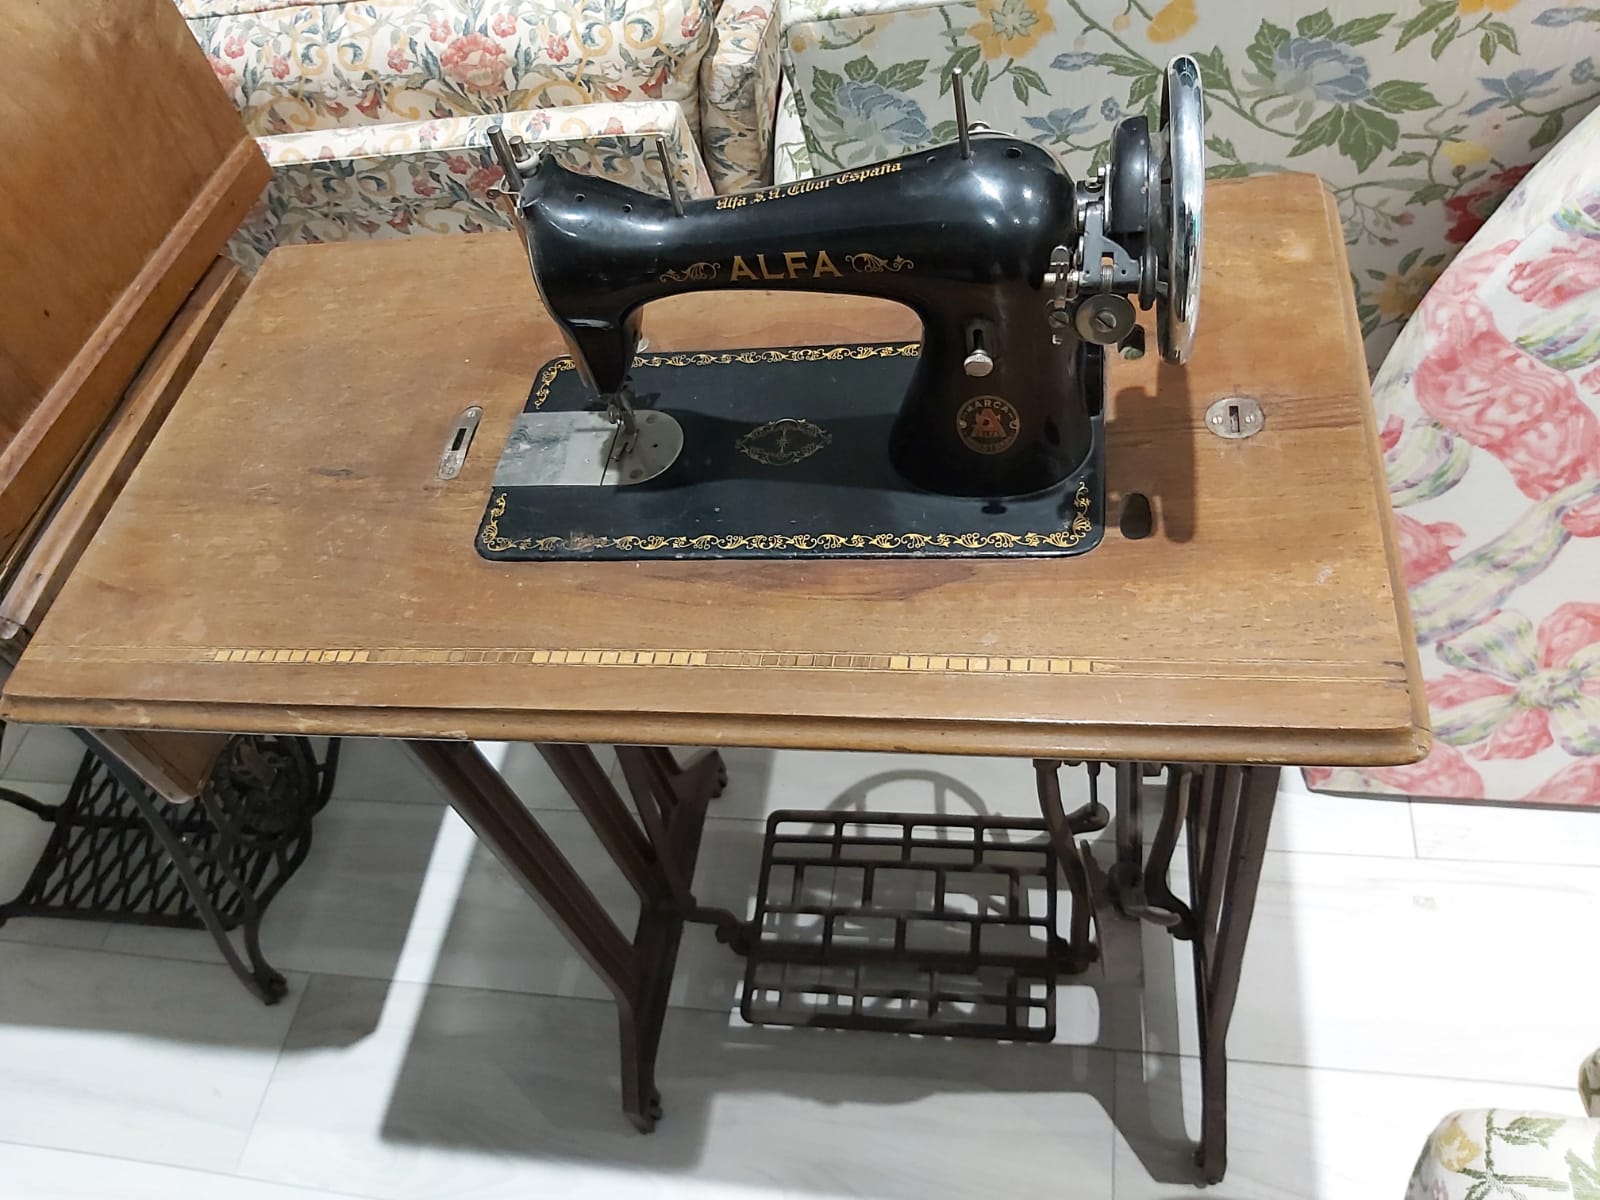 MAQUINA COSER ALFA PLEGABLE MUEBLE Maquina de coser antigua.